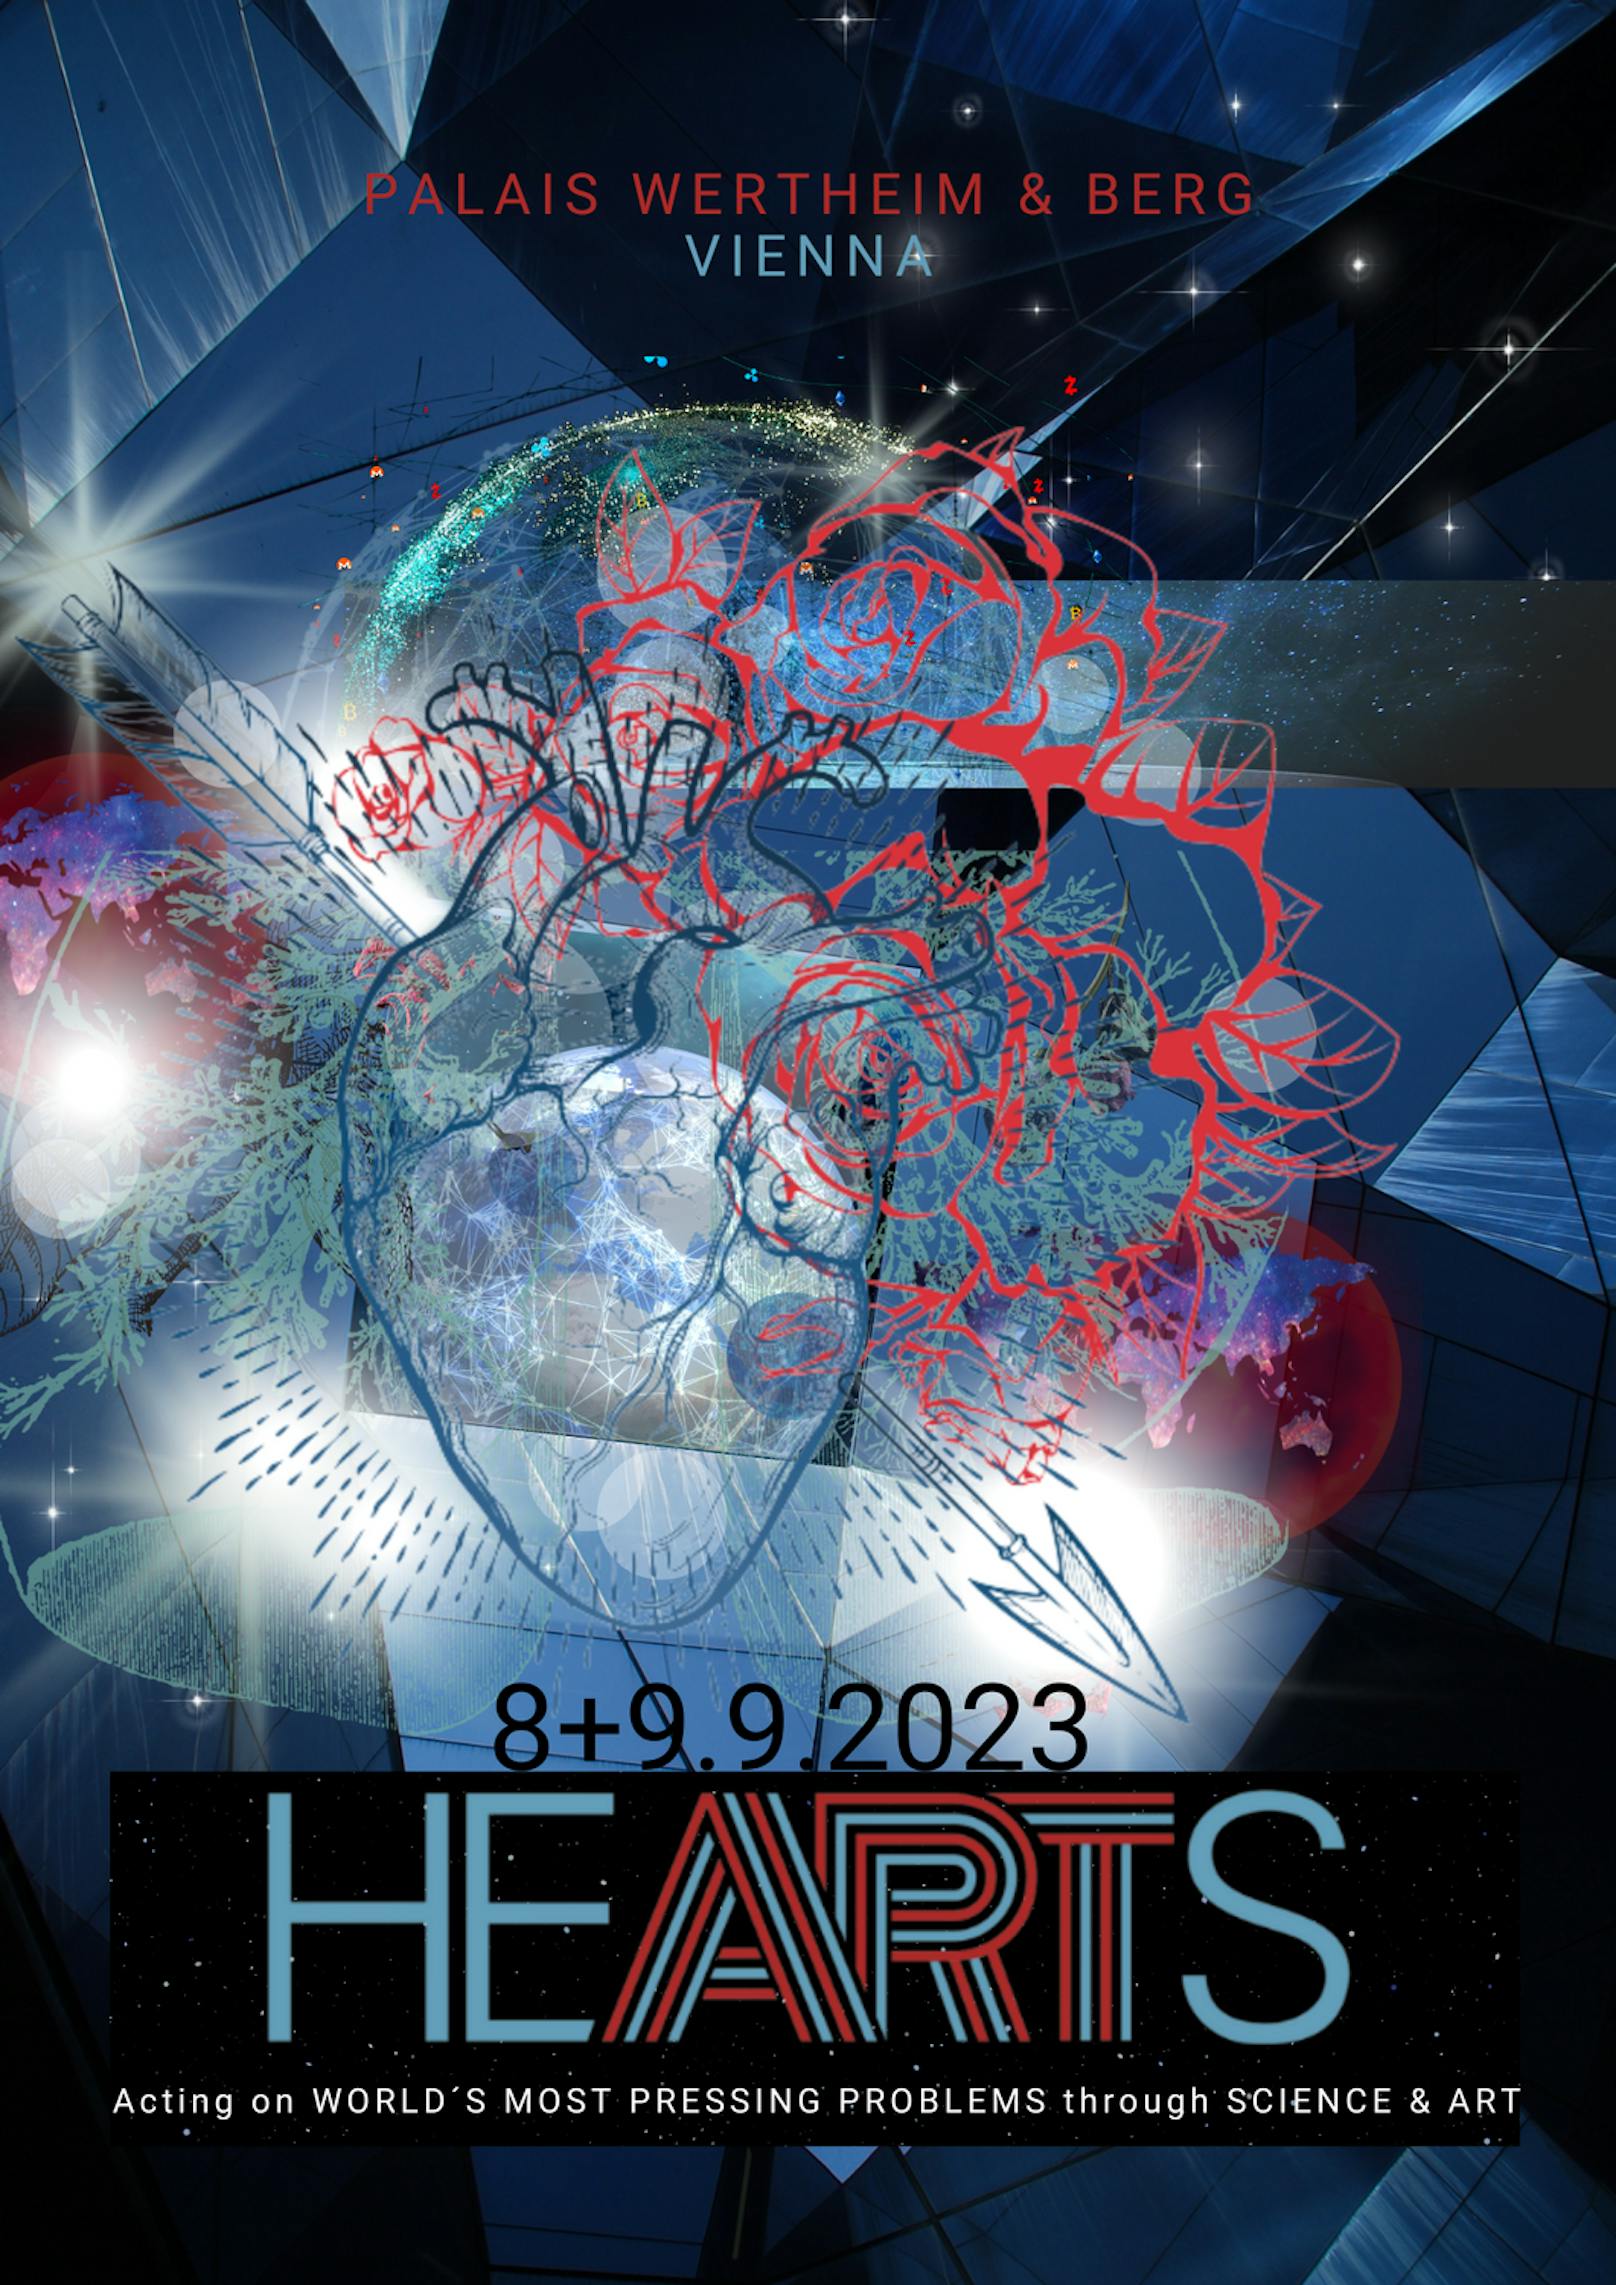 Die "<a href="https://johanneshearts.com/events/hearts-conference-2023/"><strong>HEARTS Conference</strong></a>" findet am 8. und 9. September 2023 im Wiener Palais Wertheim statt.